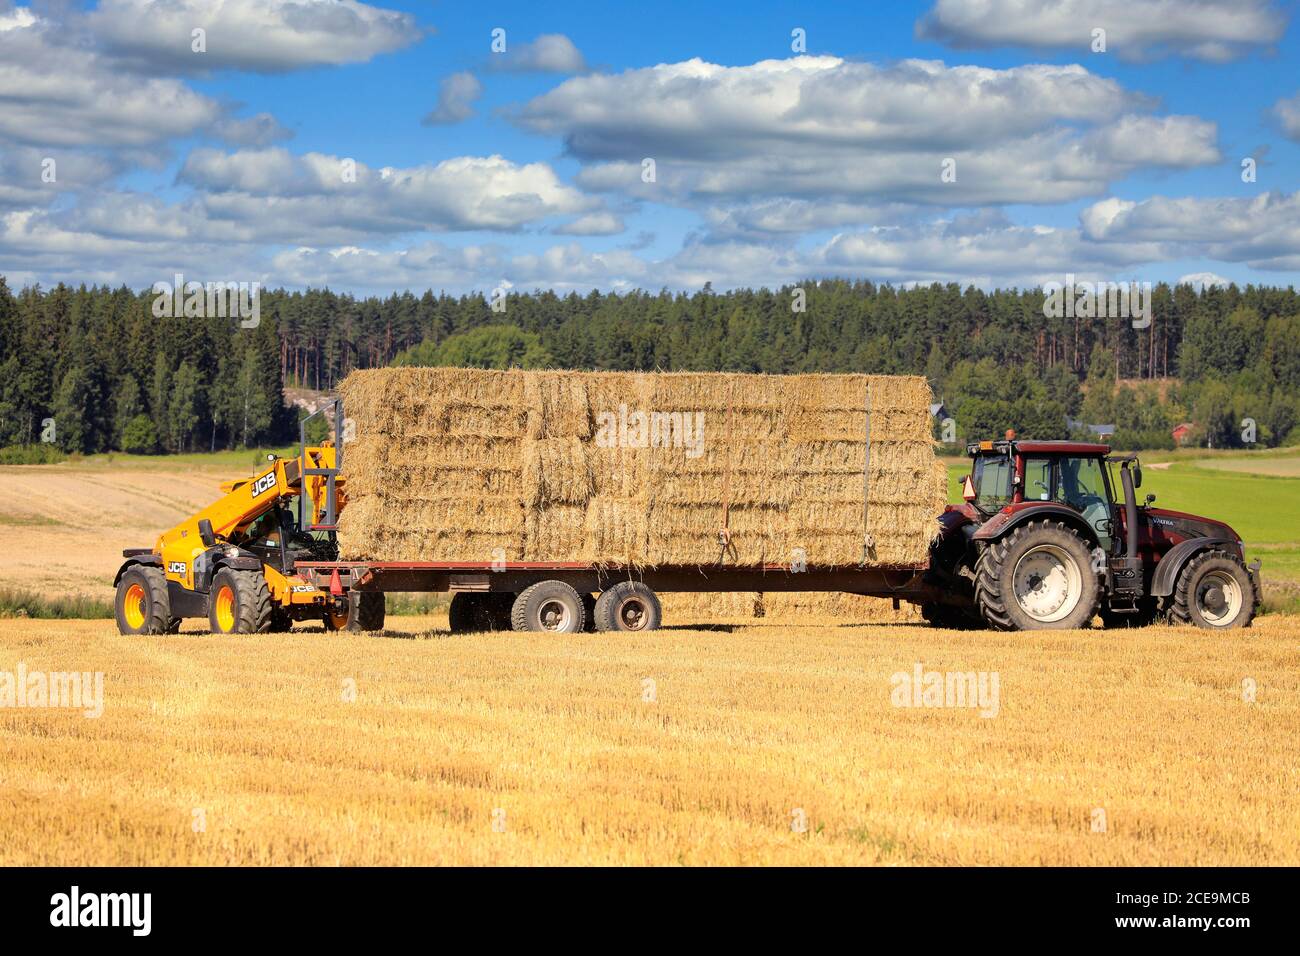 Le téléchargeur JCB T4 empilant des balles de paille sur un tracteur Valtra a tiré une remorque agricole sur un terrain de chaume par beau temps. Salo, Finlande. 16 août 2020. Banque D'Images